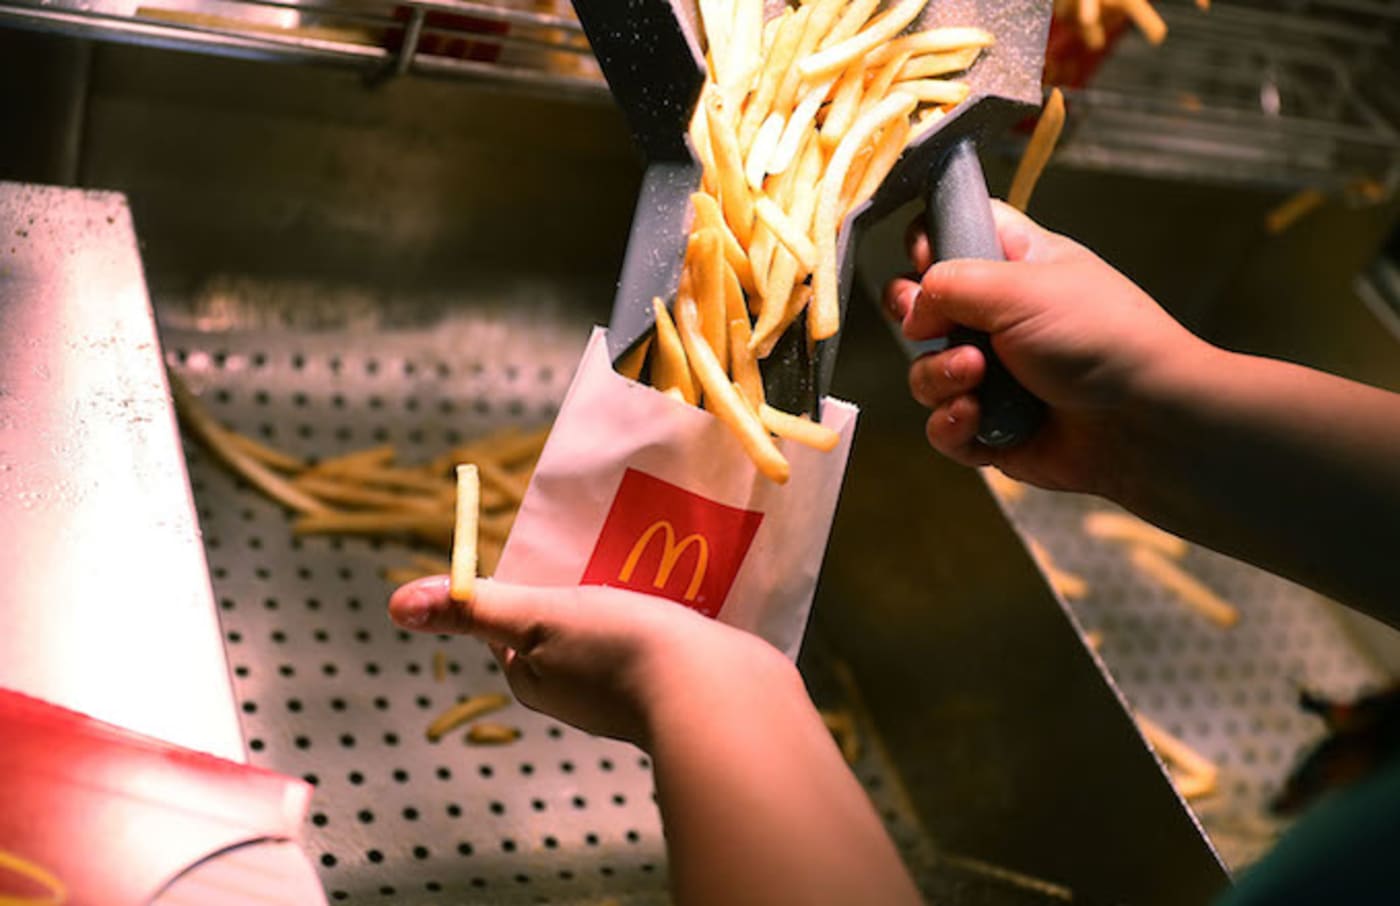 A  McDonald's crew member preparing fries.